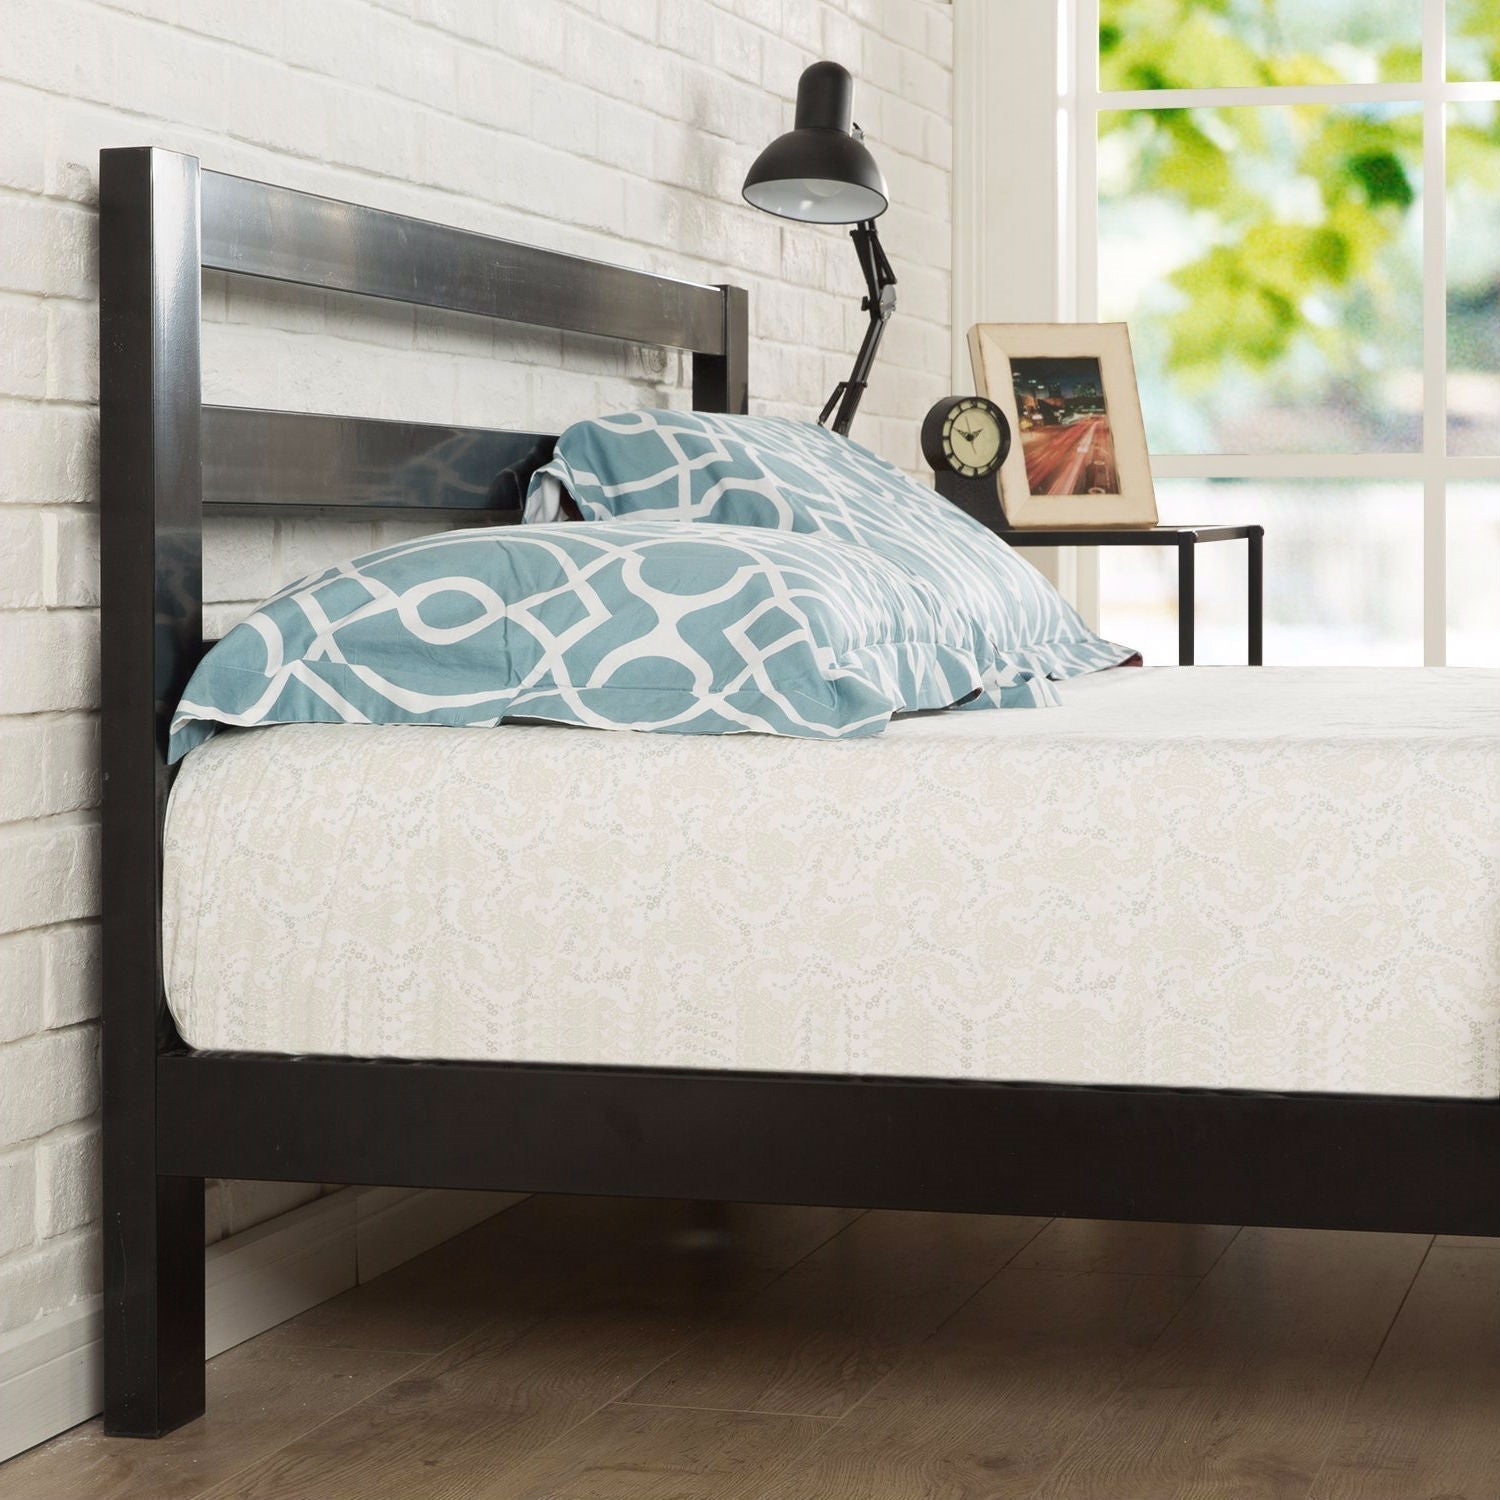 Bedroom > Bed Frames > Platform Beds - Twin Size Modern Metal Platform Bed Frame With Headboard And Wood Support Slats